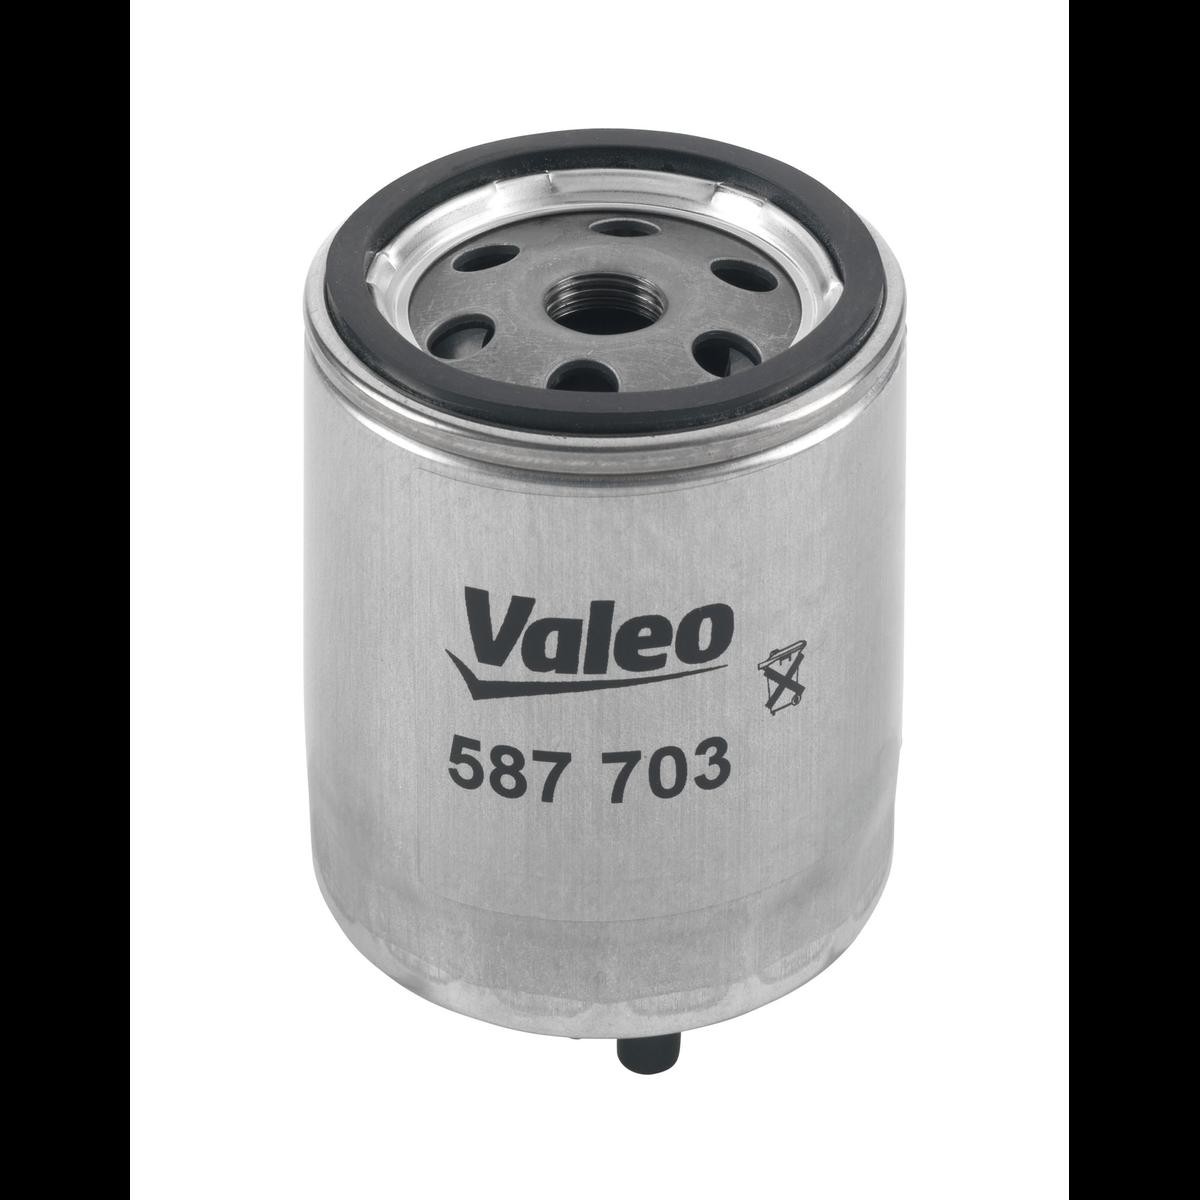 VALEO 587703 Fuel filter Spin-on Filter